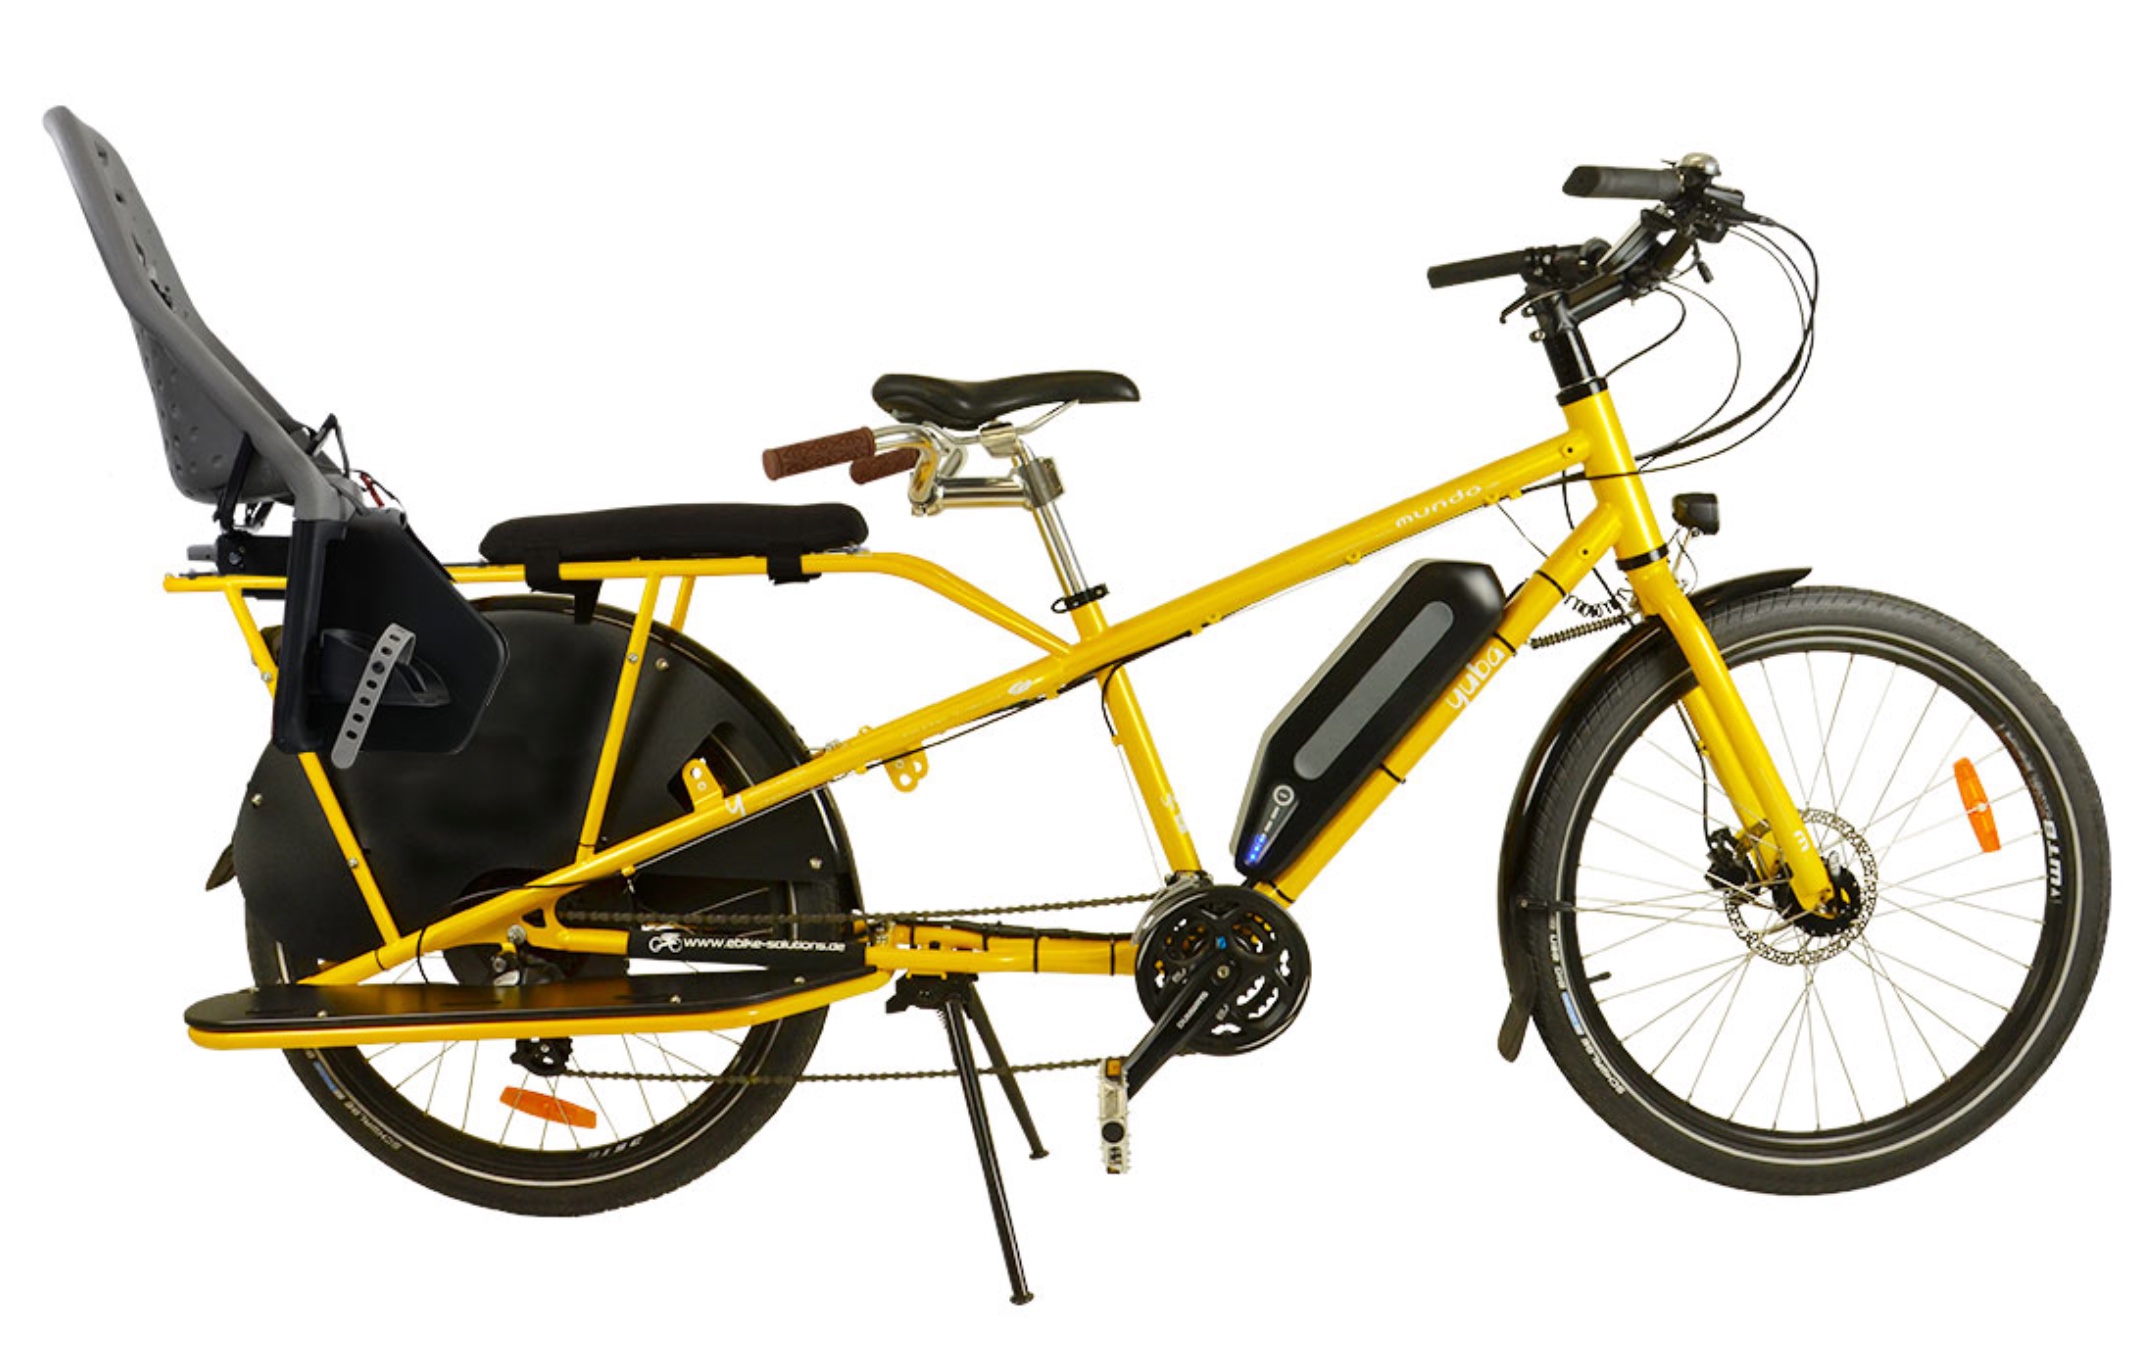 Fahrrad mit integriertem kindersitz vorne - Die besten Fahrrad mit integriertem kindersitz vorne im Überblick